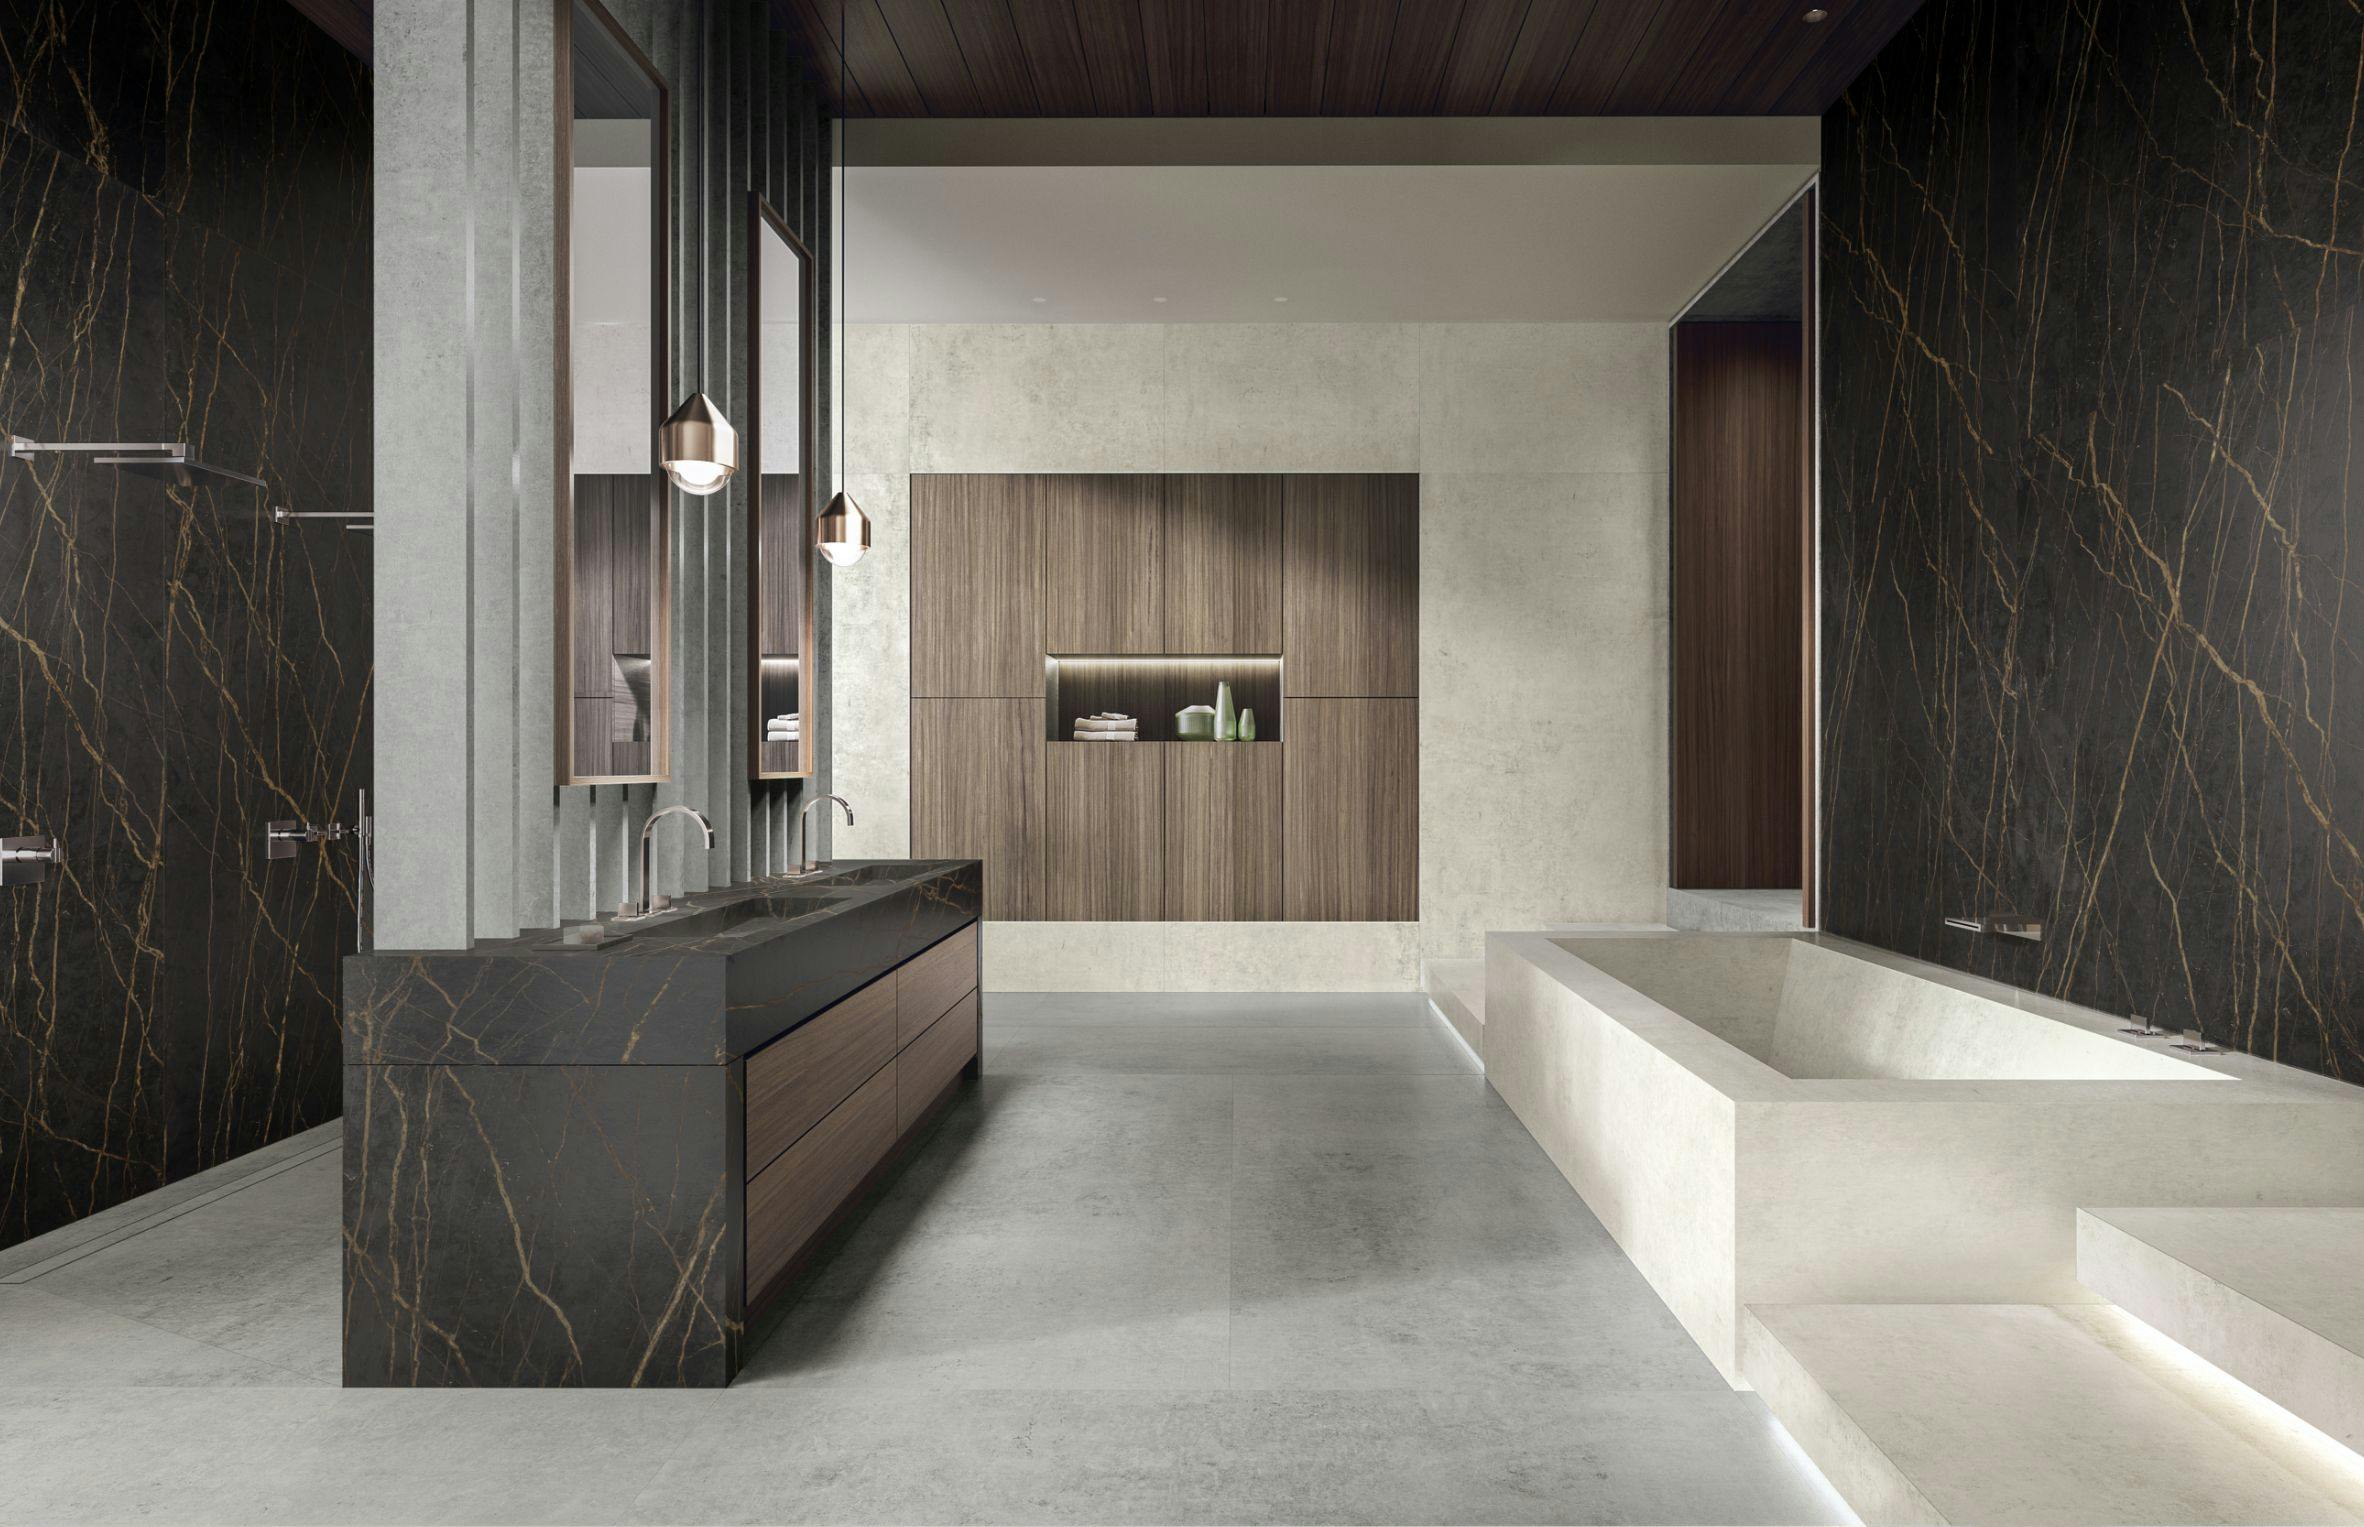 Numero immagine 38 della sezione corrente di Natural light partners with Dekton Marmorio to create an enveloping, sophisticated bathroom di Cosentino Italia